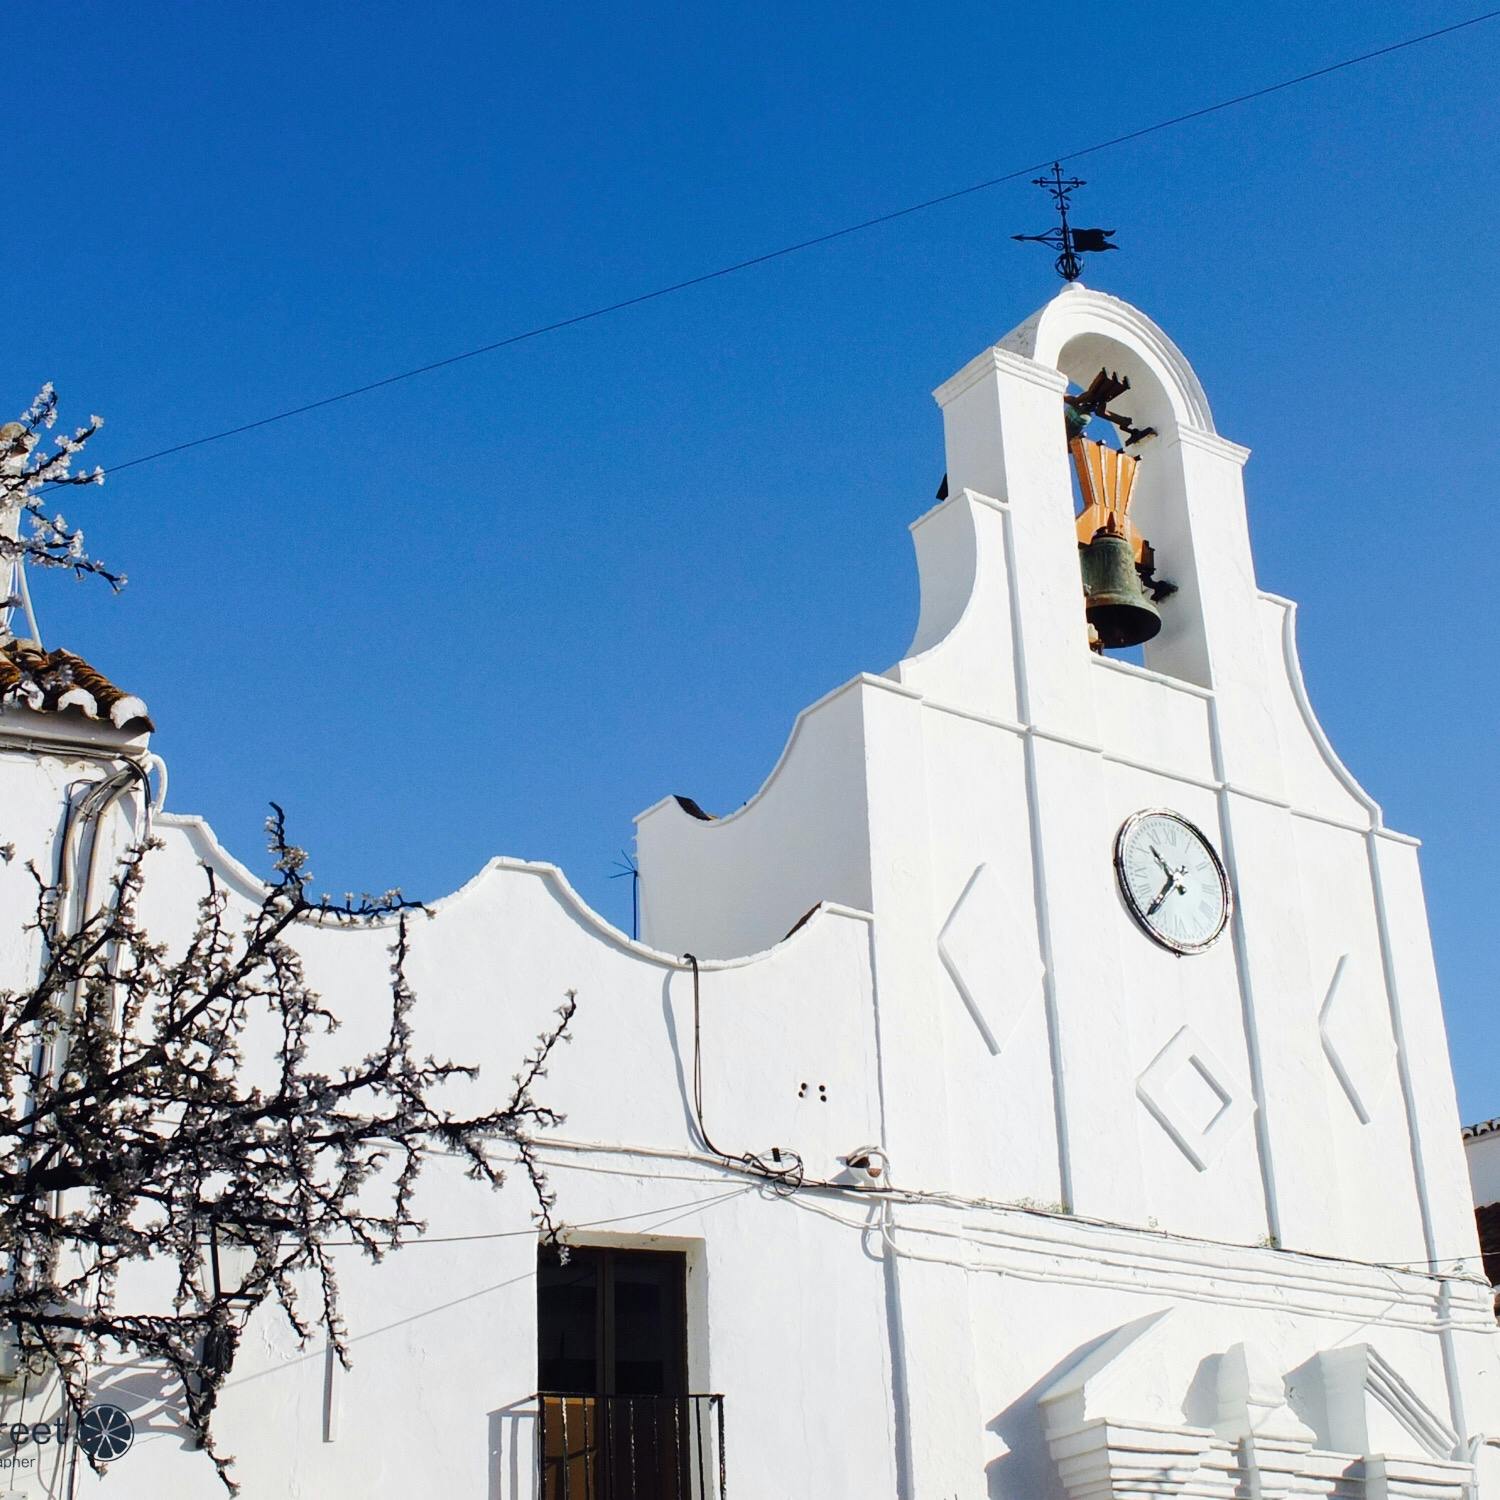 サン セバスティアン教会 Ermita De San Sebastian の投稿写真 感想 みどころ スペインの白い村ミハスの白い教会 青い空に 白い家並みがまぶ トリップノート